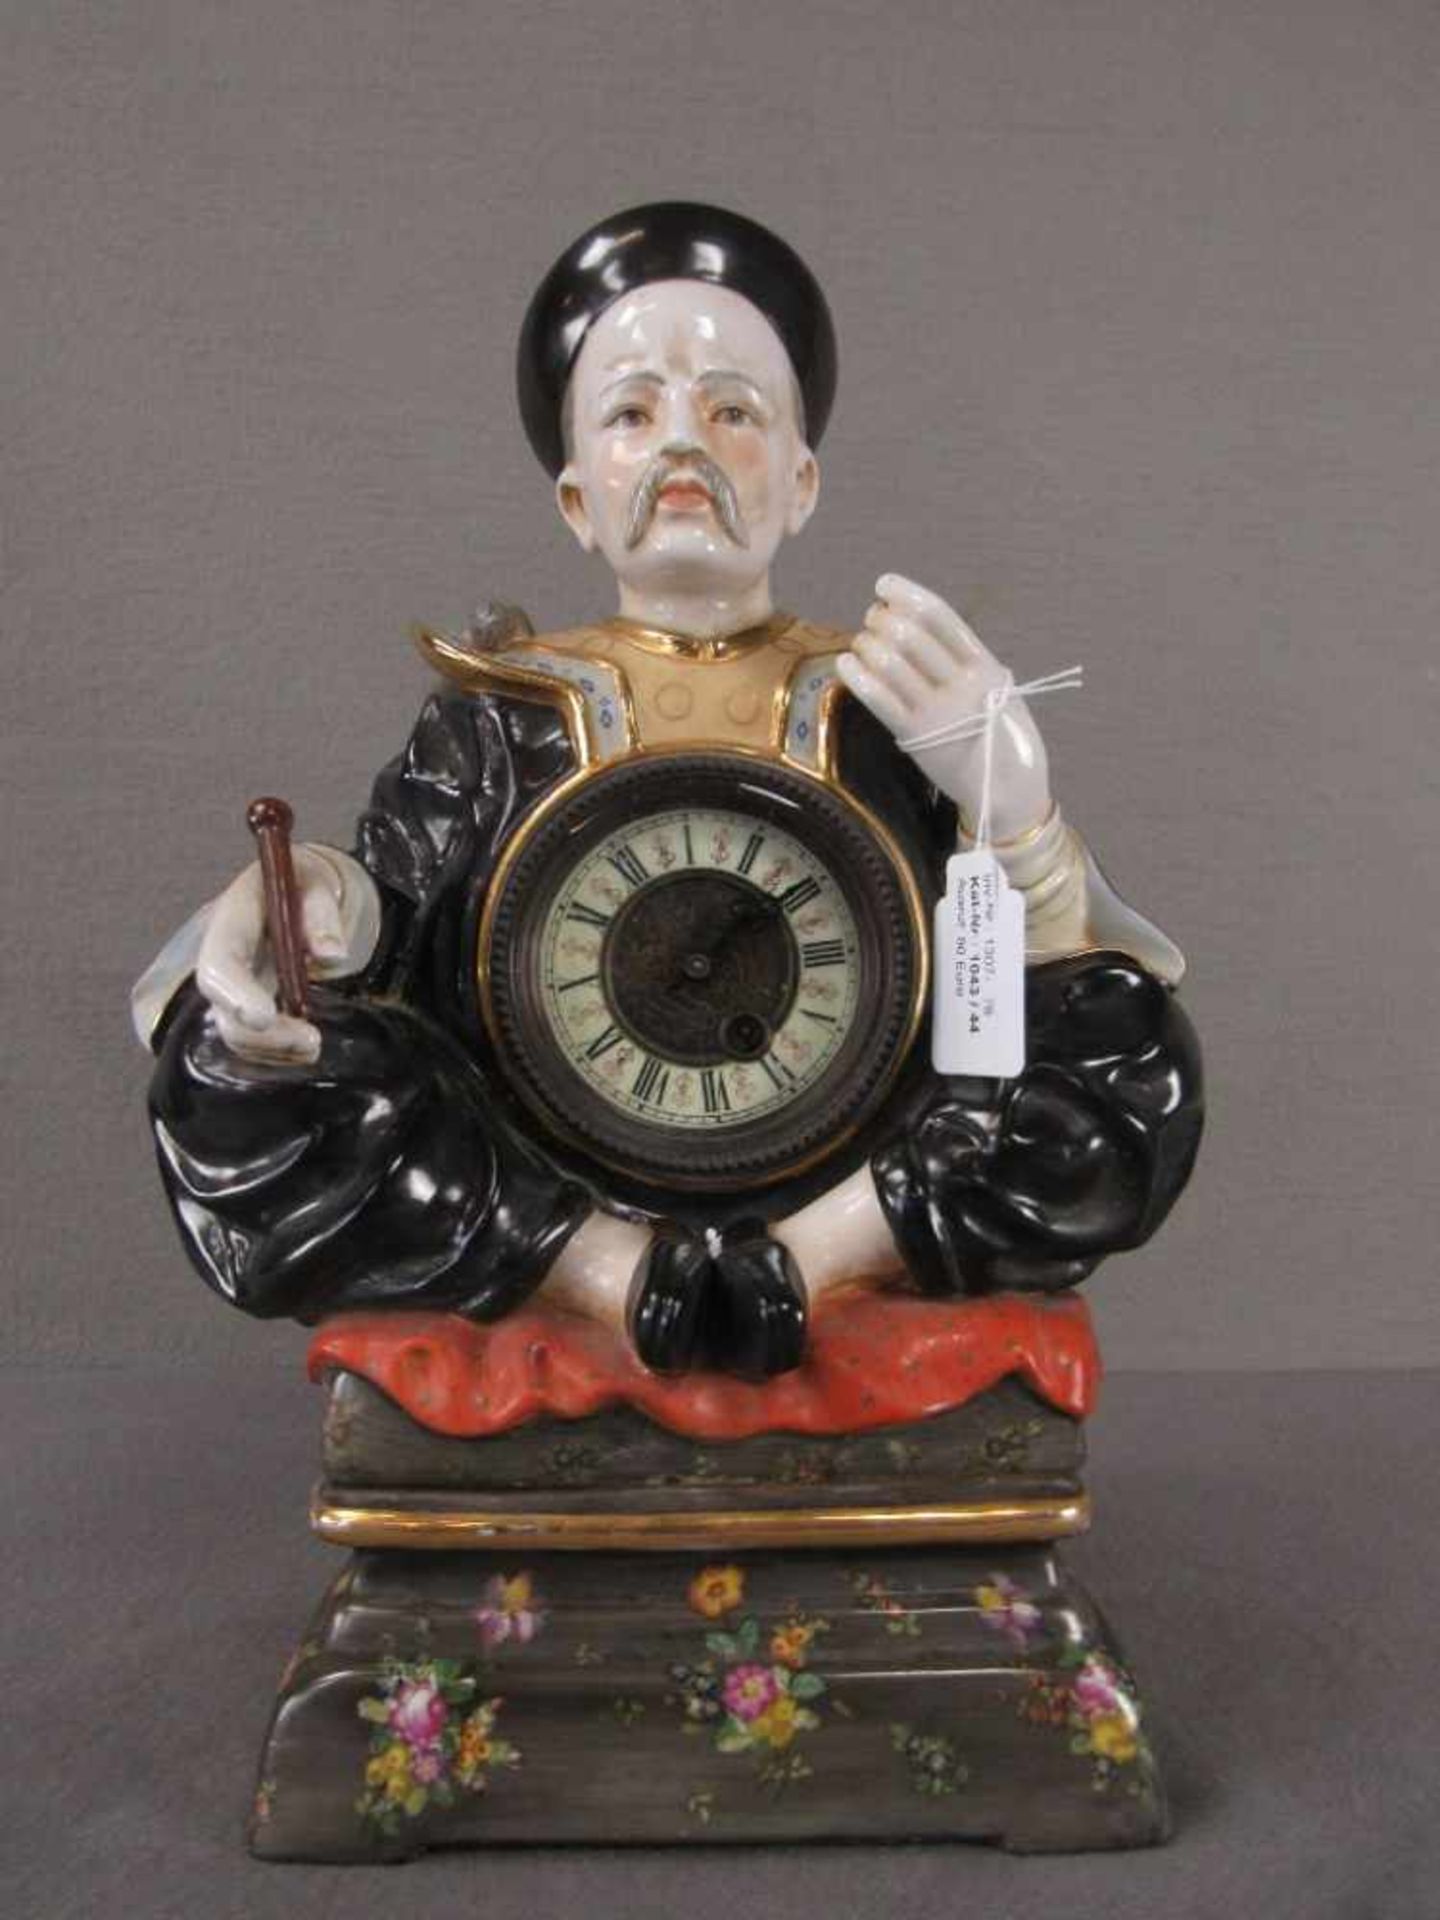 Tischuhr Kaminuhr lasierte Keramik asiatischer Gelehrter fein bemalt Uhrwerk läuft an 38cm hoch<